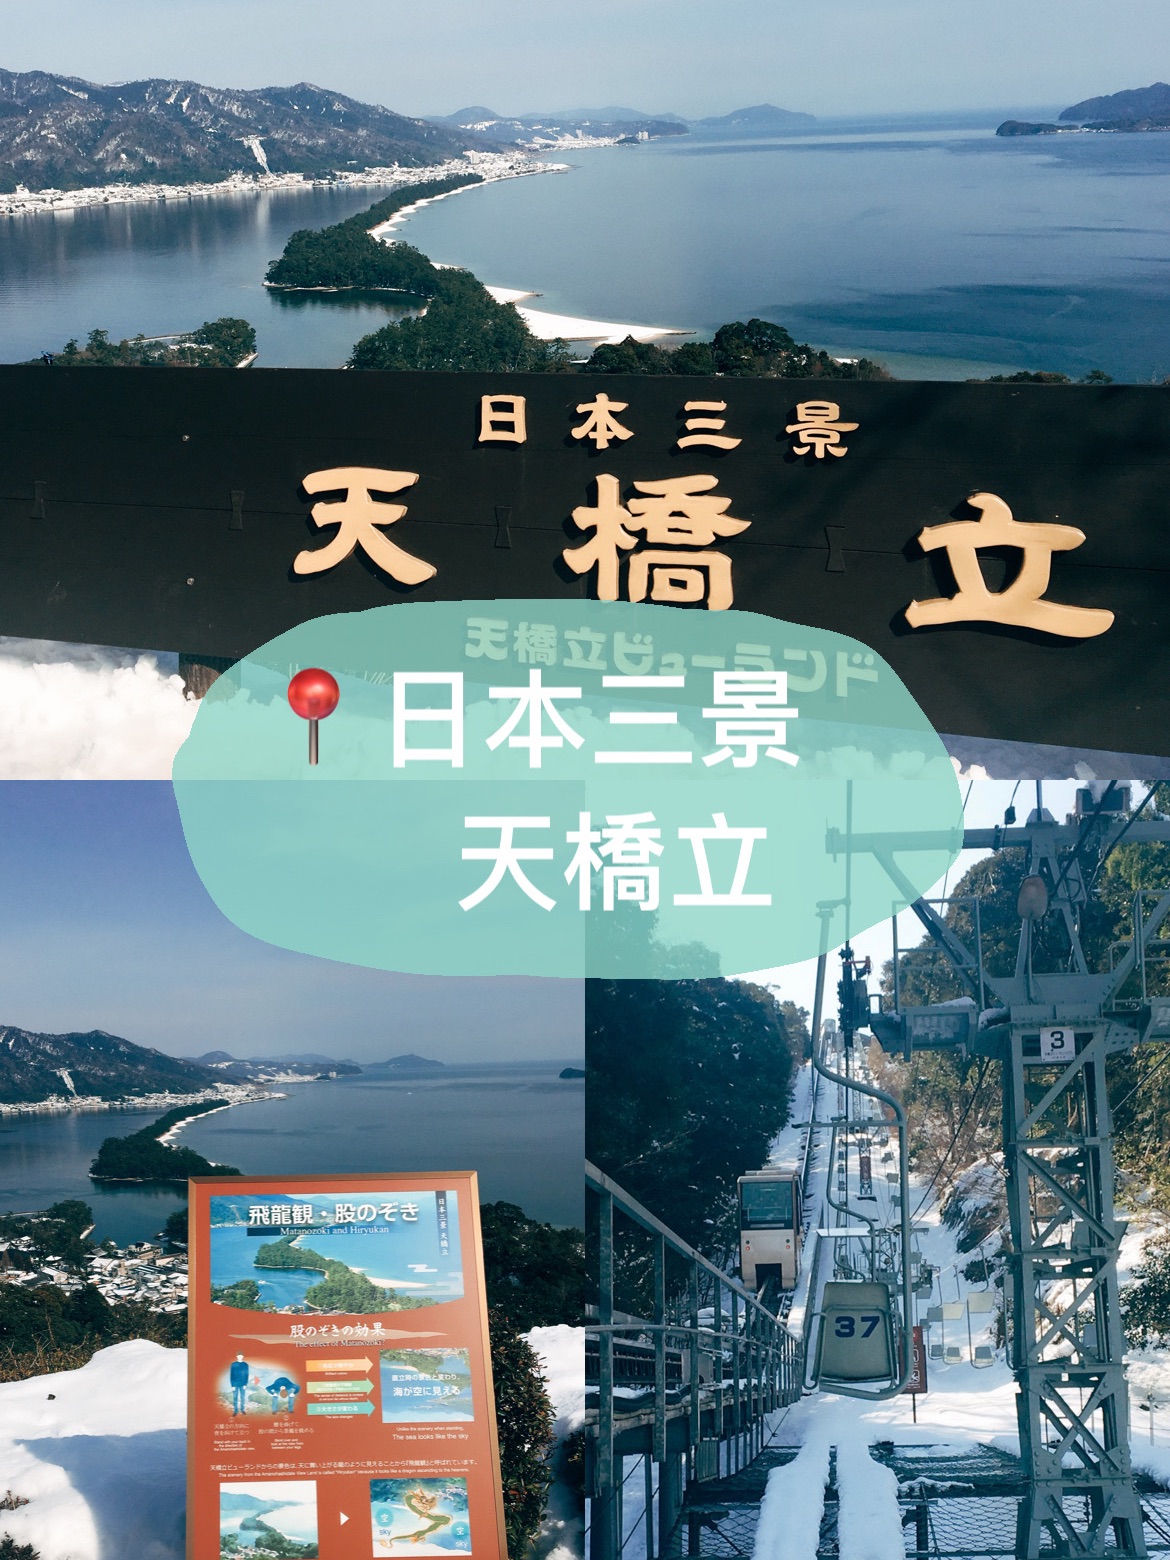 🇯🇵日本三景之一👣 天桥立View Land的飞龙观🐉